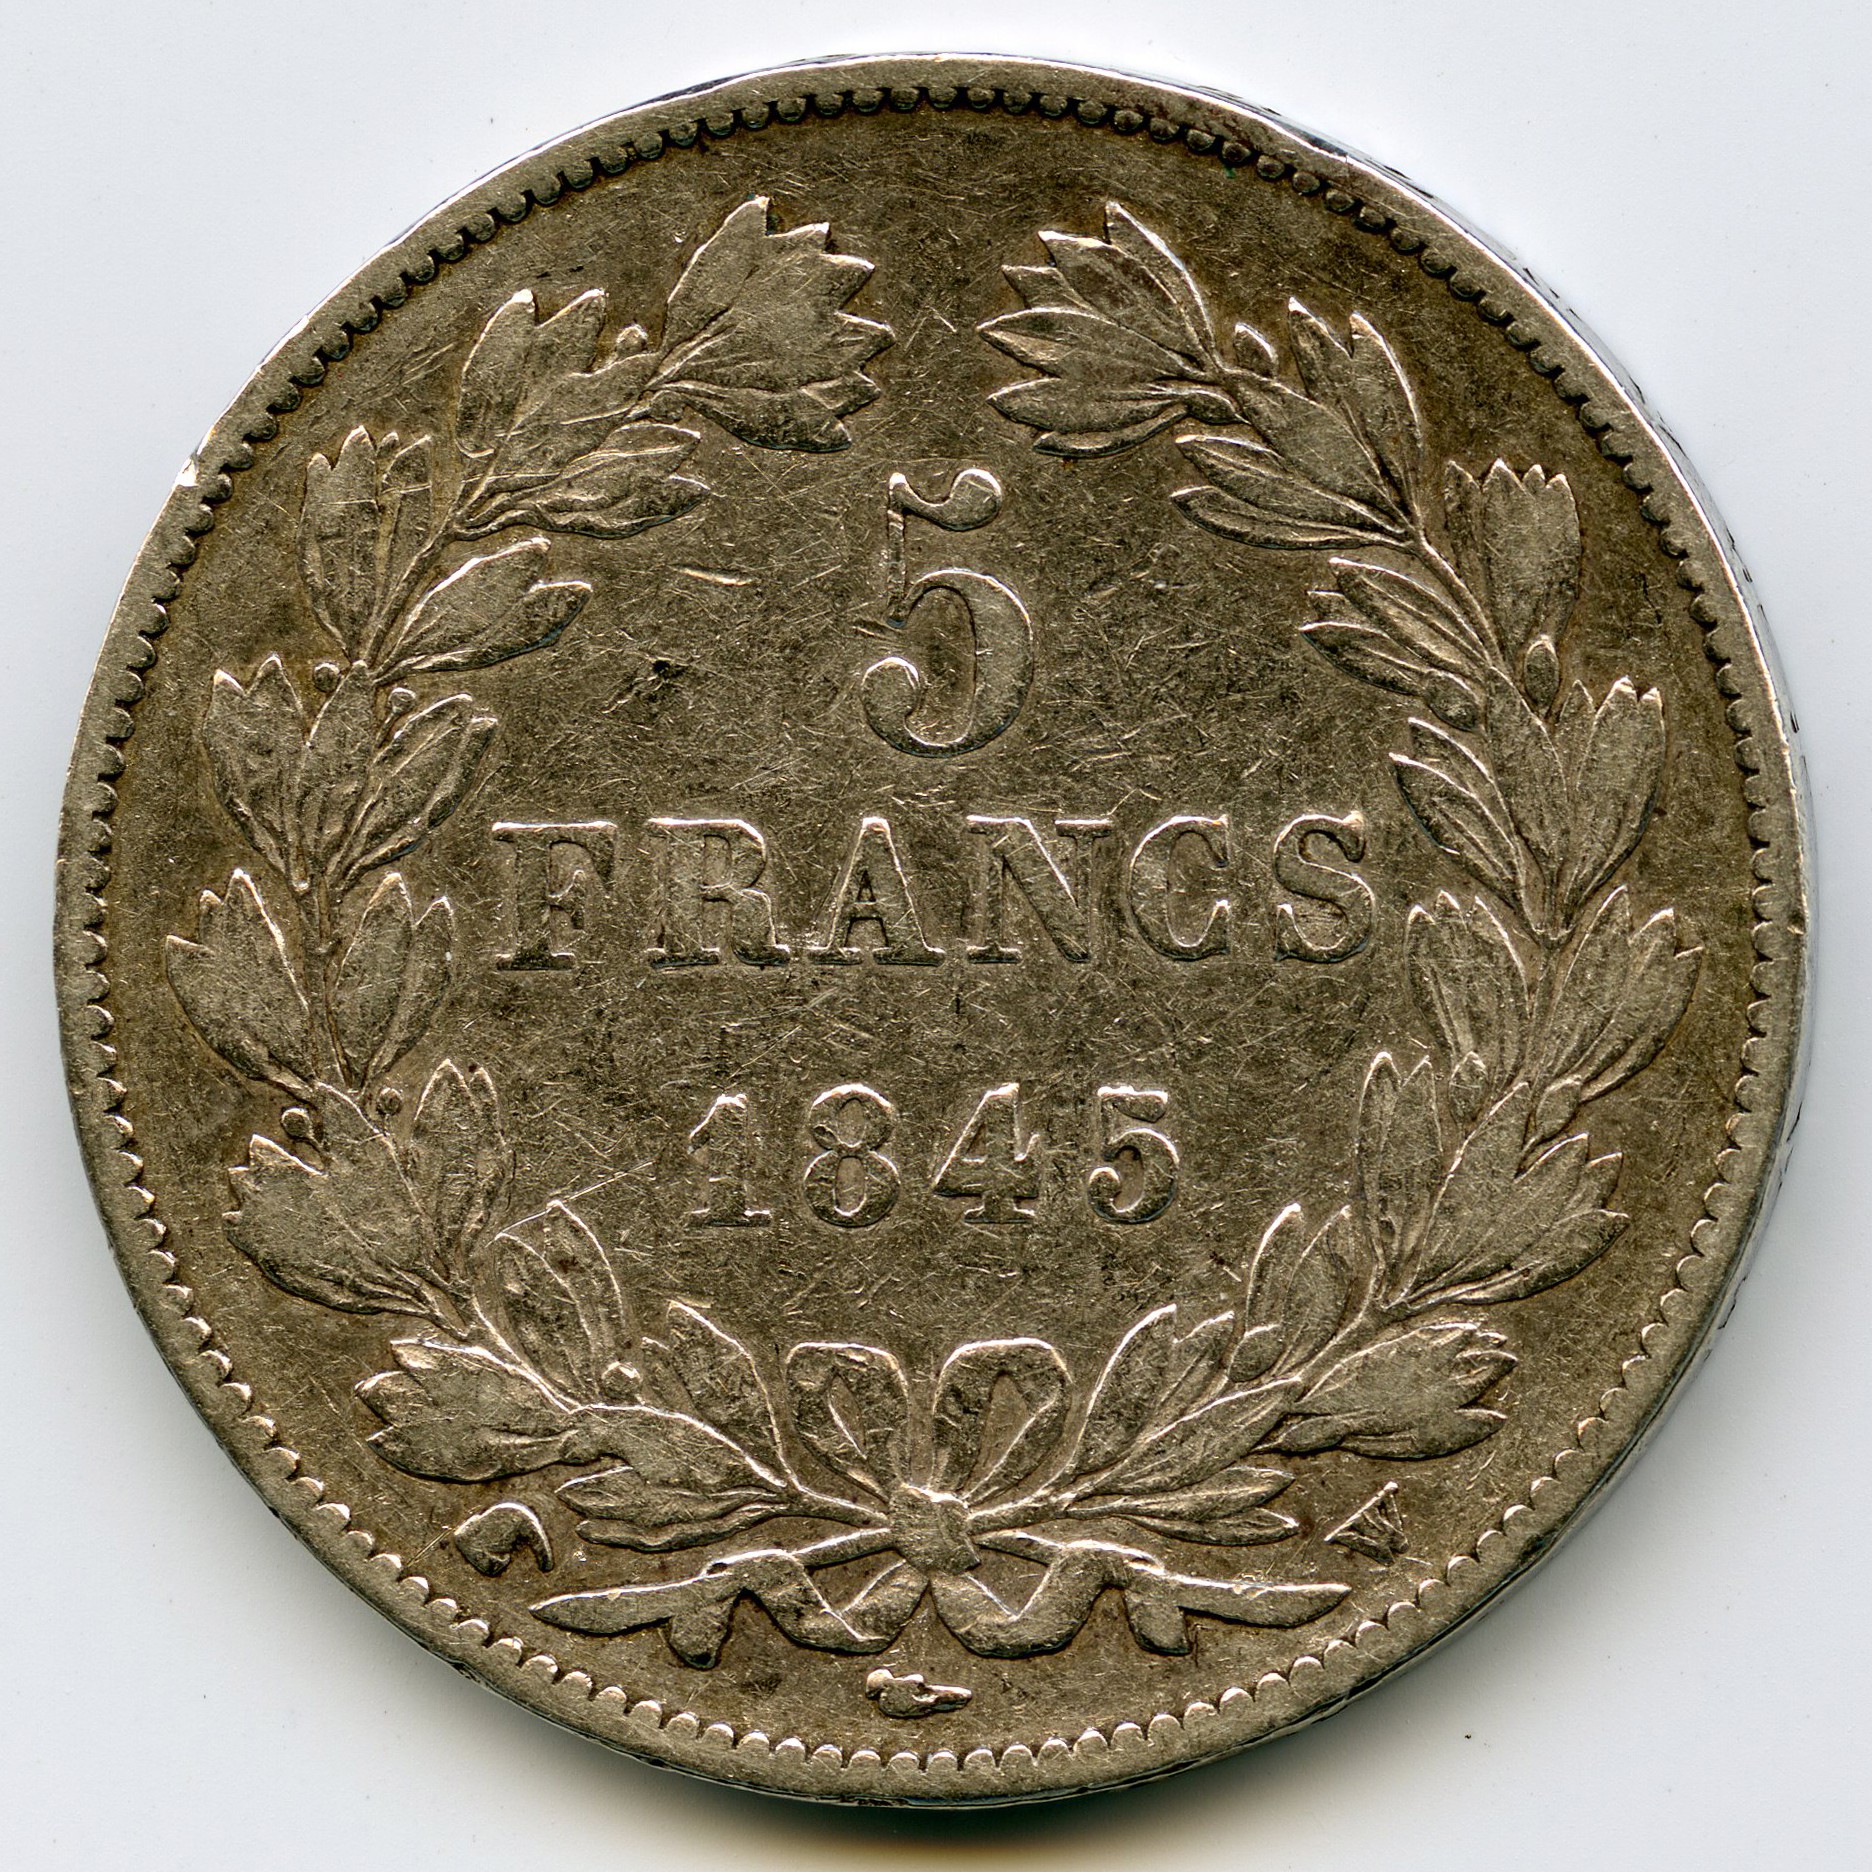 Loius-Philippe I - 5 Francs - 1845 W revers